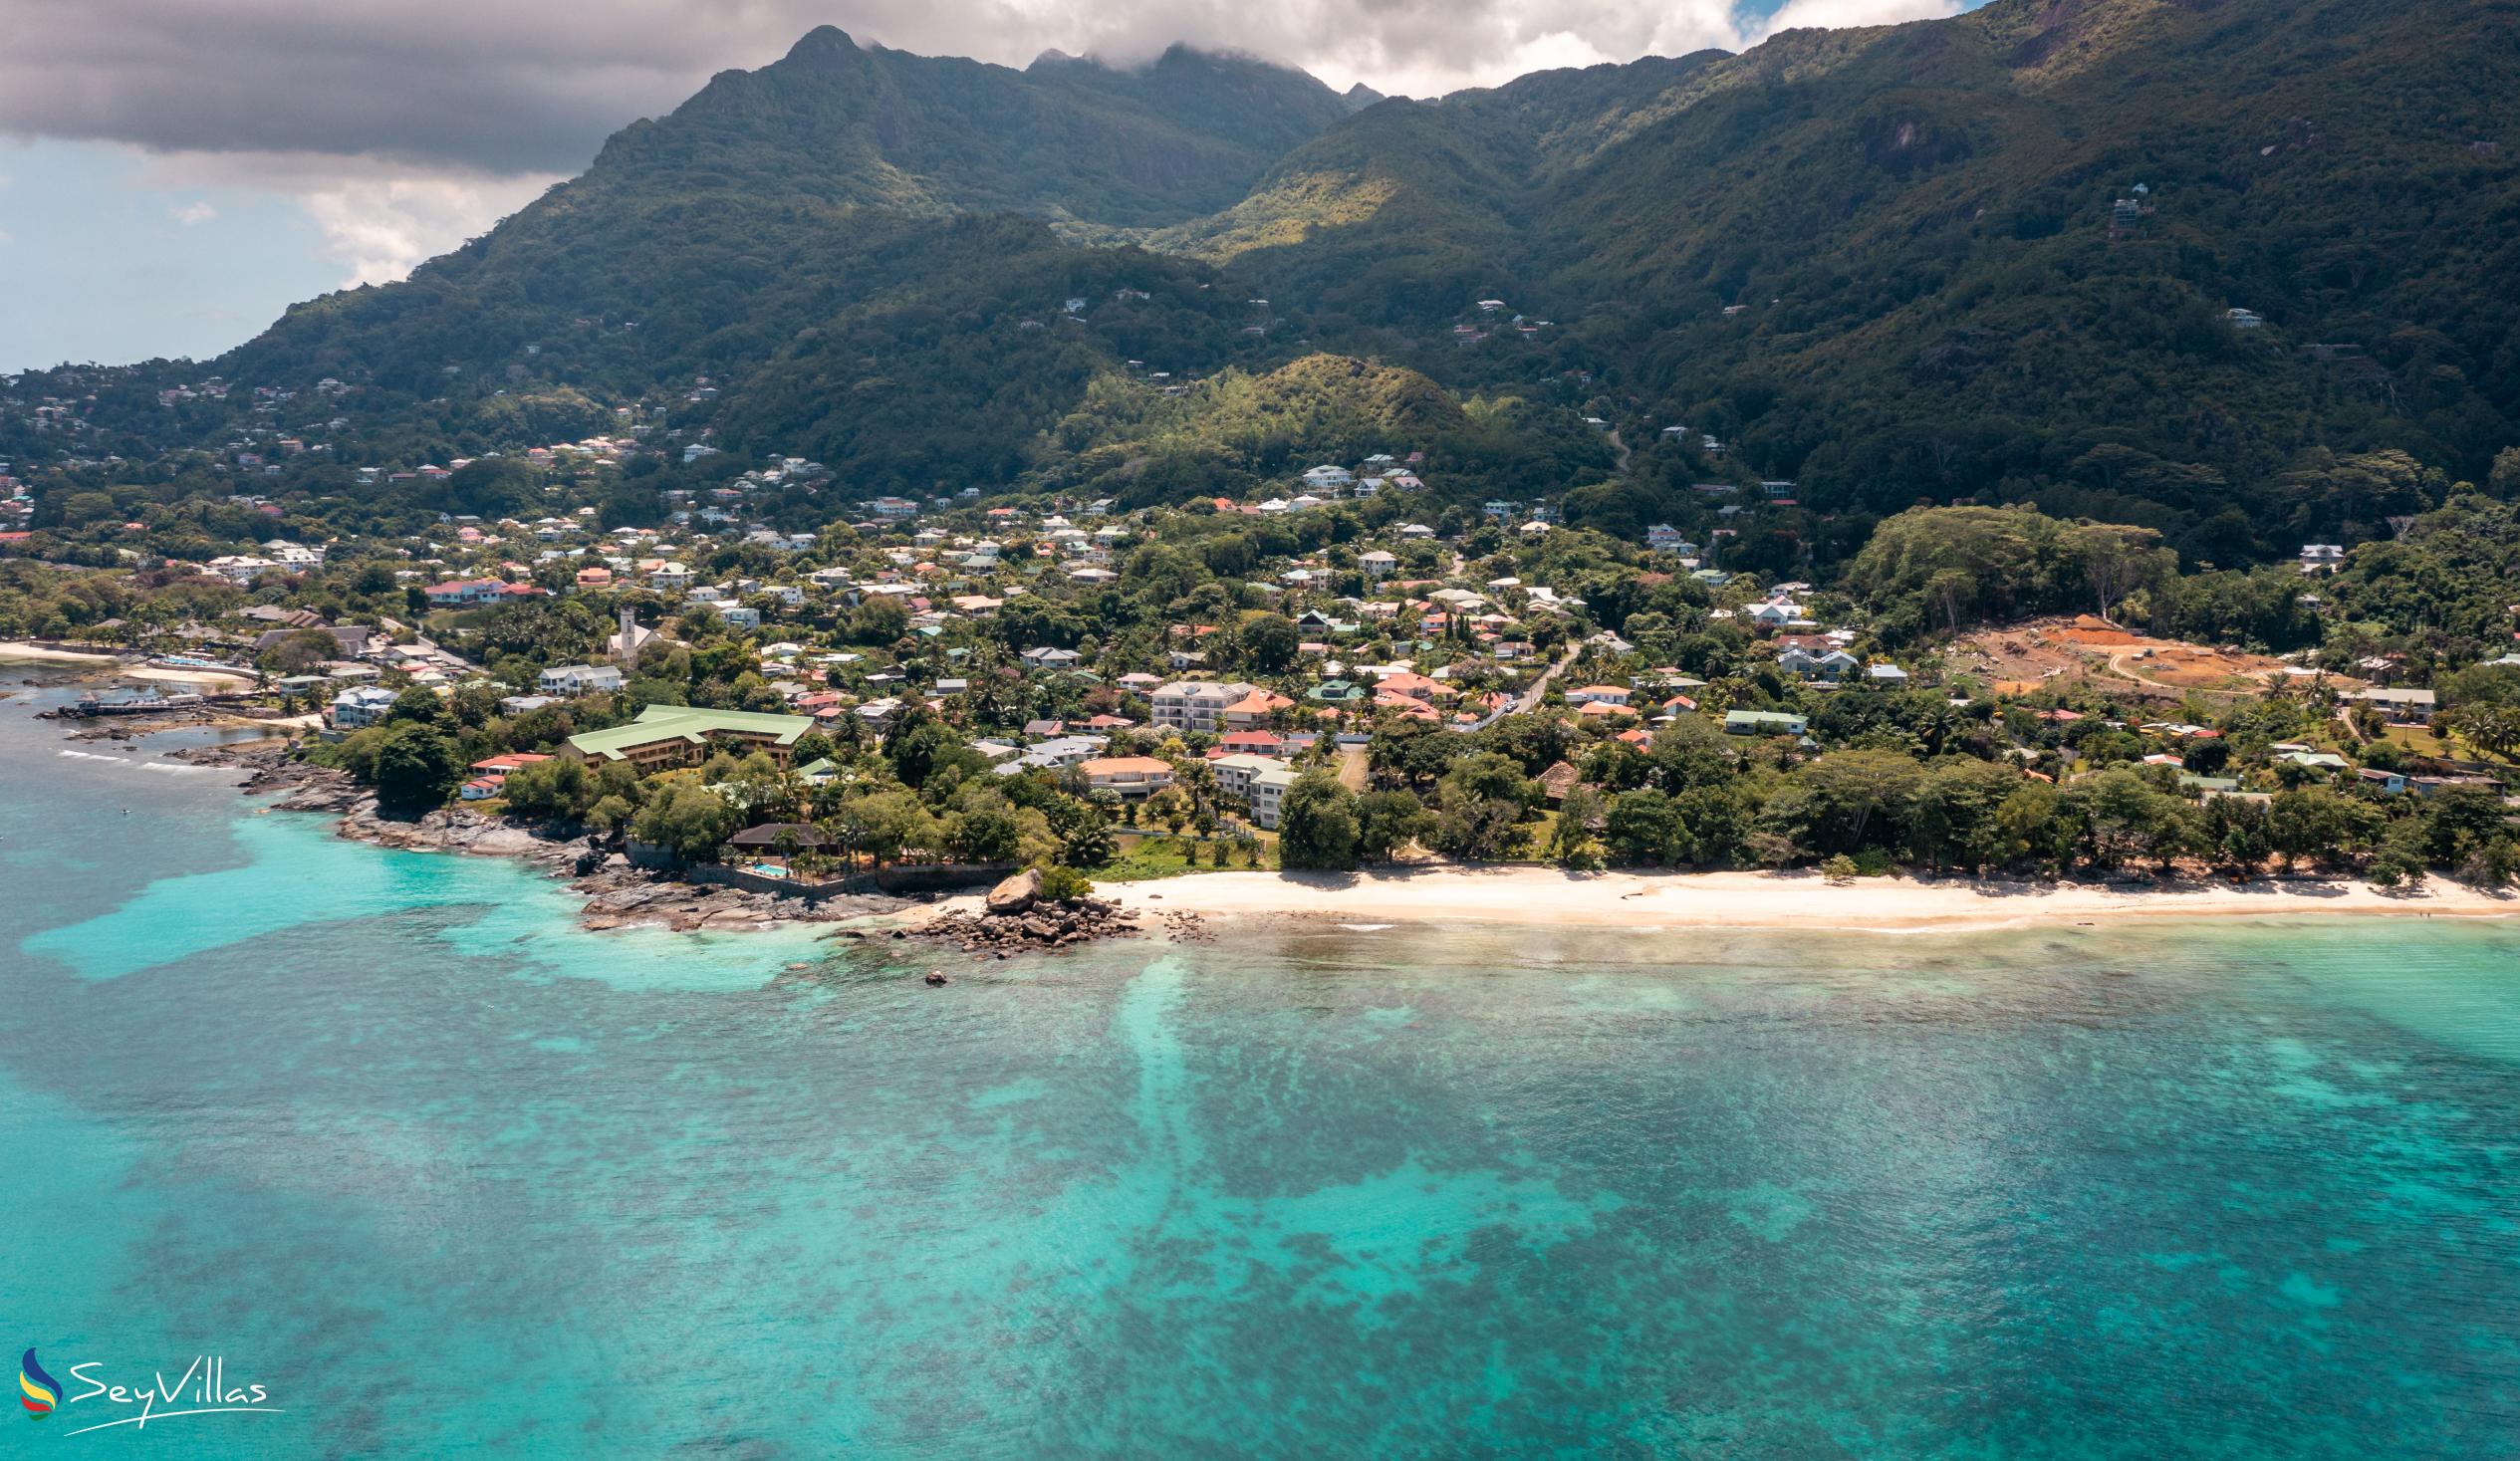 Photo 35: Lodoicea Apartments - Location - Mahé (Seychelles)